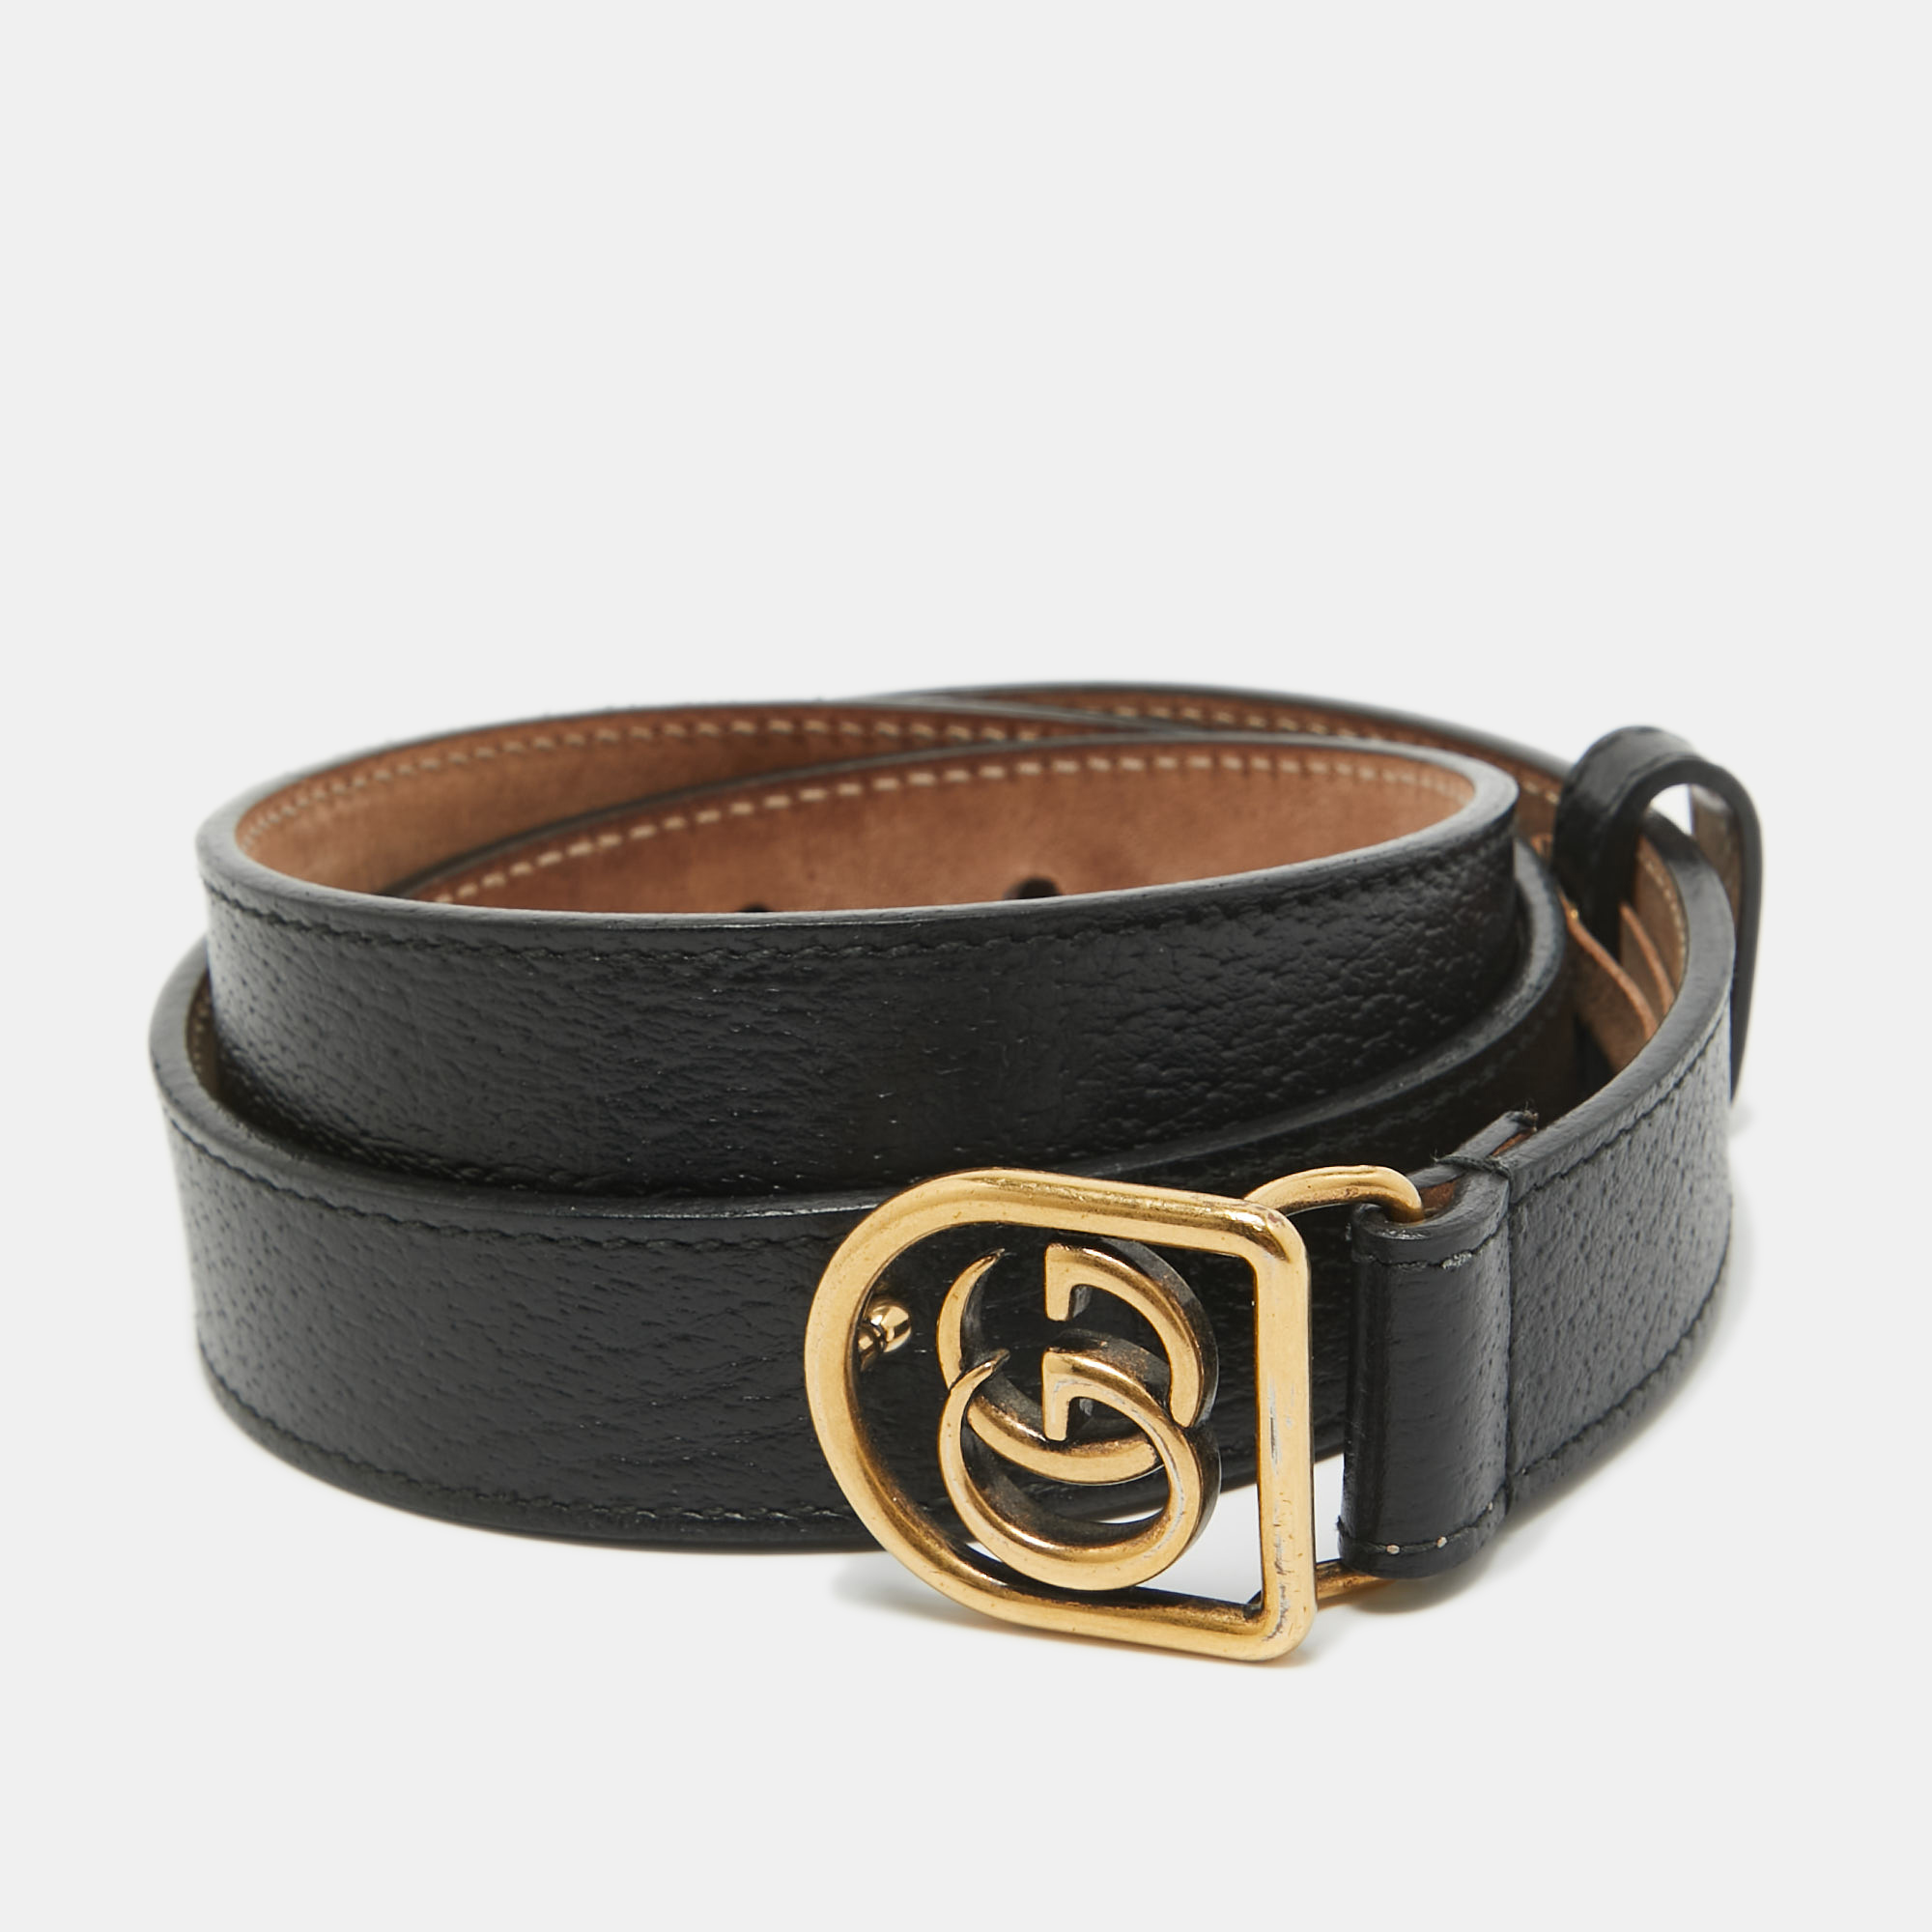 Gucci black leather framed double g belt 90cm